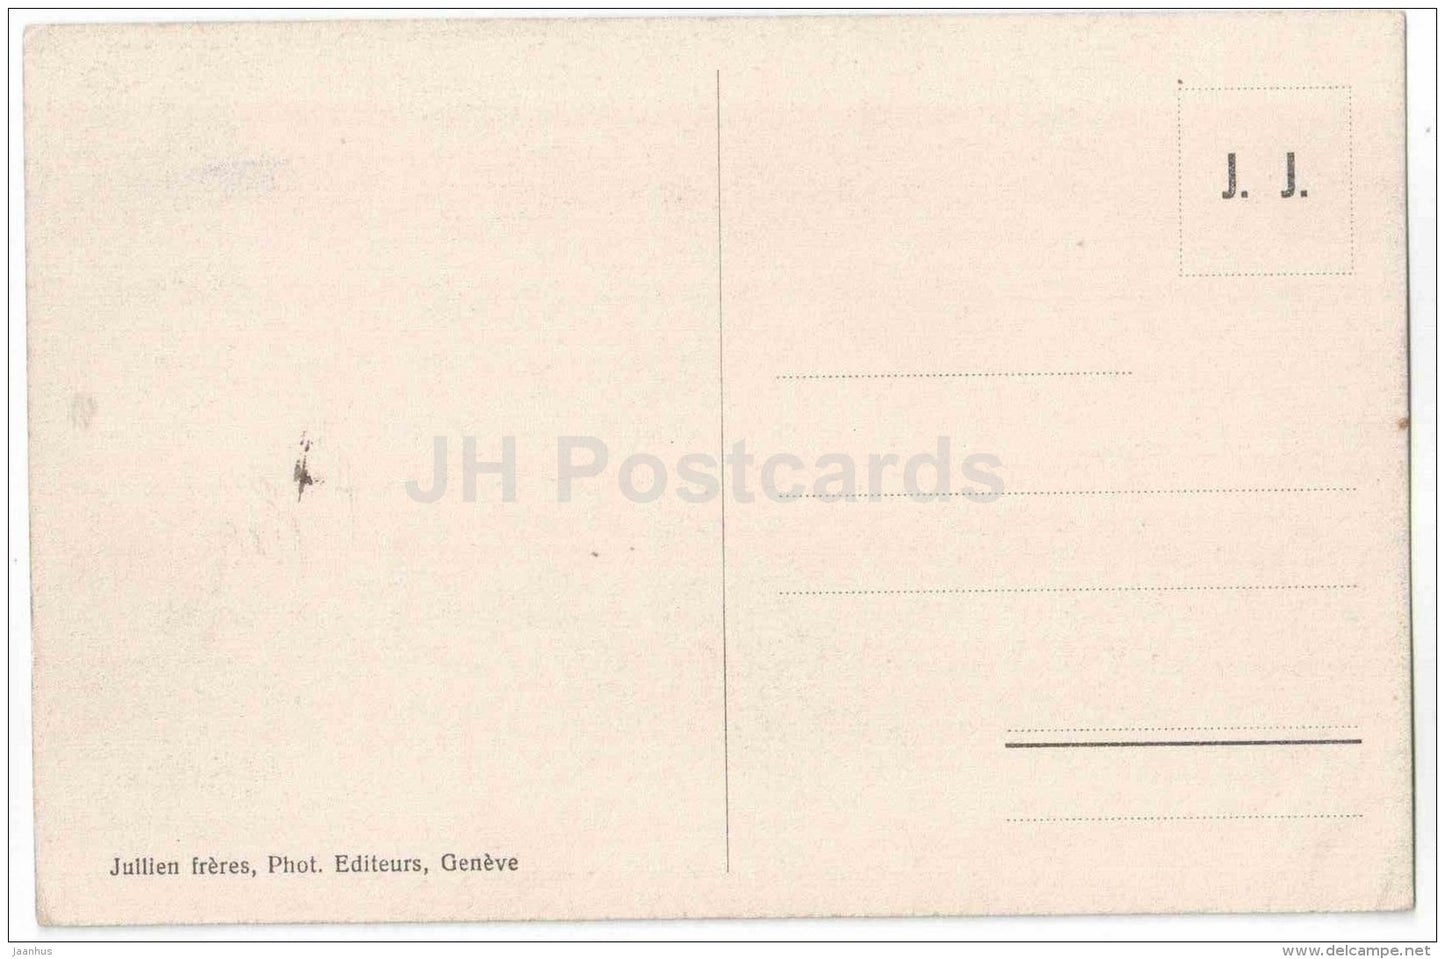 Chateau de Chillon - Salle des Chevaliers - castle - J. J. 7926 - Switzerland - unused - JH Postcards